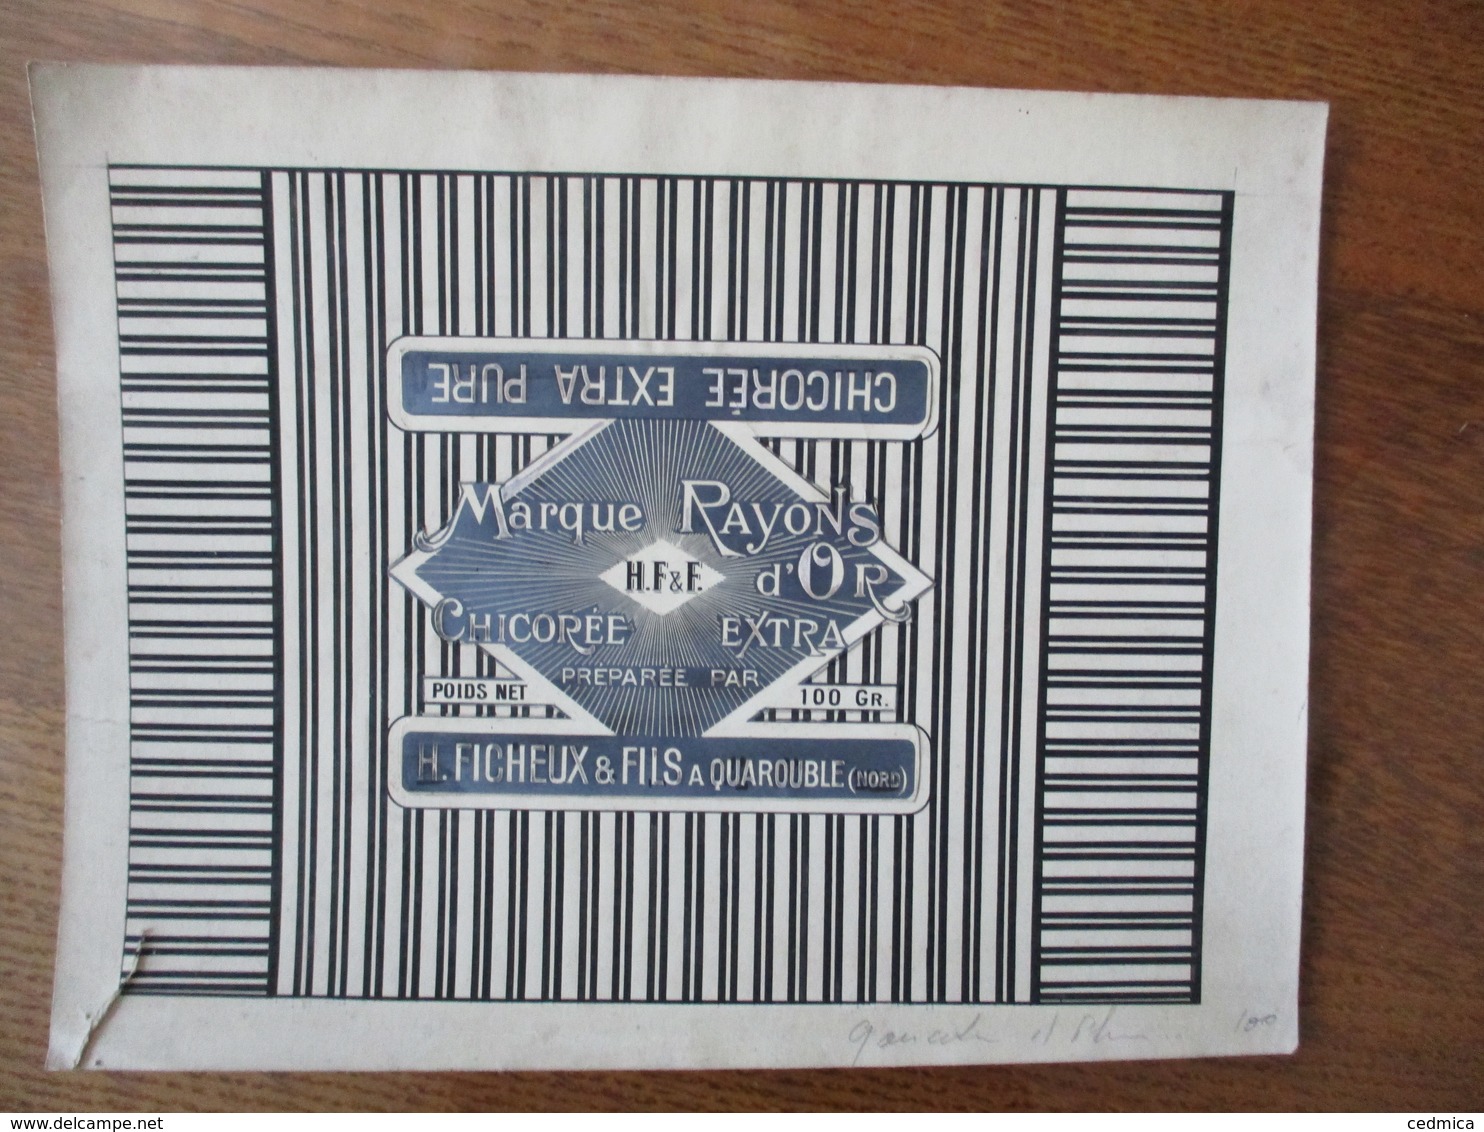 H. FICHEUX & FILS A QUAROUBLE NORD MARQUE RAYON D'OR CHICOREE EXTRA PURE (EPREUVE) 23cm/17,5cm - Publicités